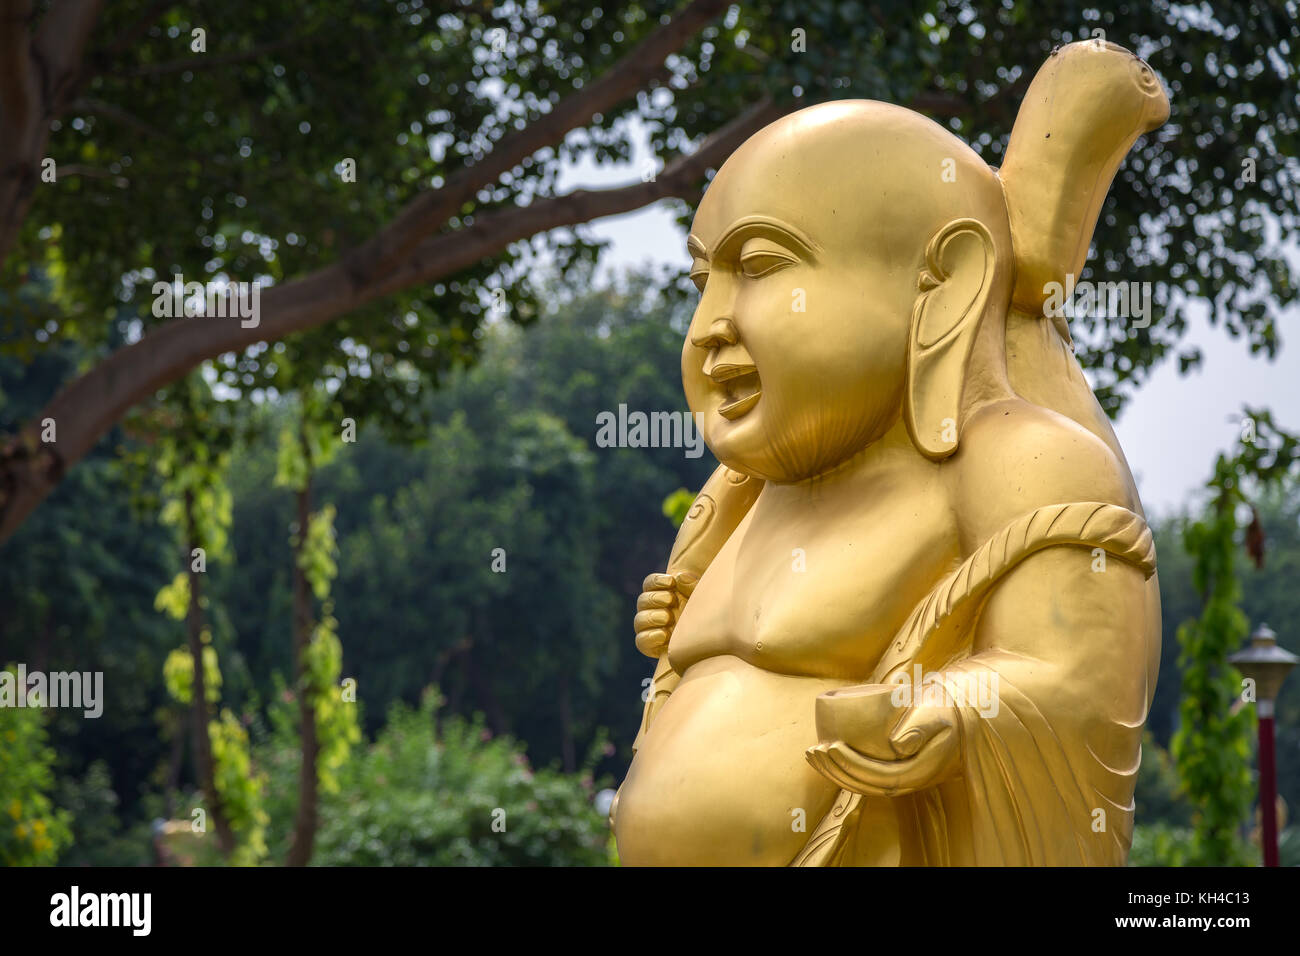 Golden laughing Buddha sculpture at Wat Thai Buddhist monastery at Sarnath, Varanasi Stock Photo